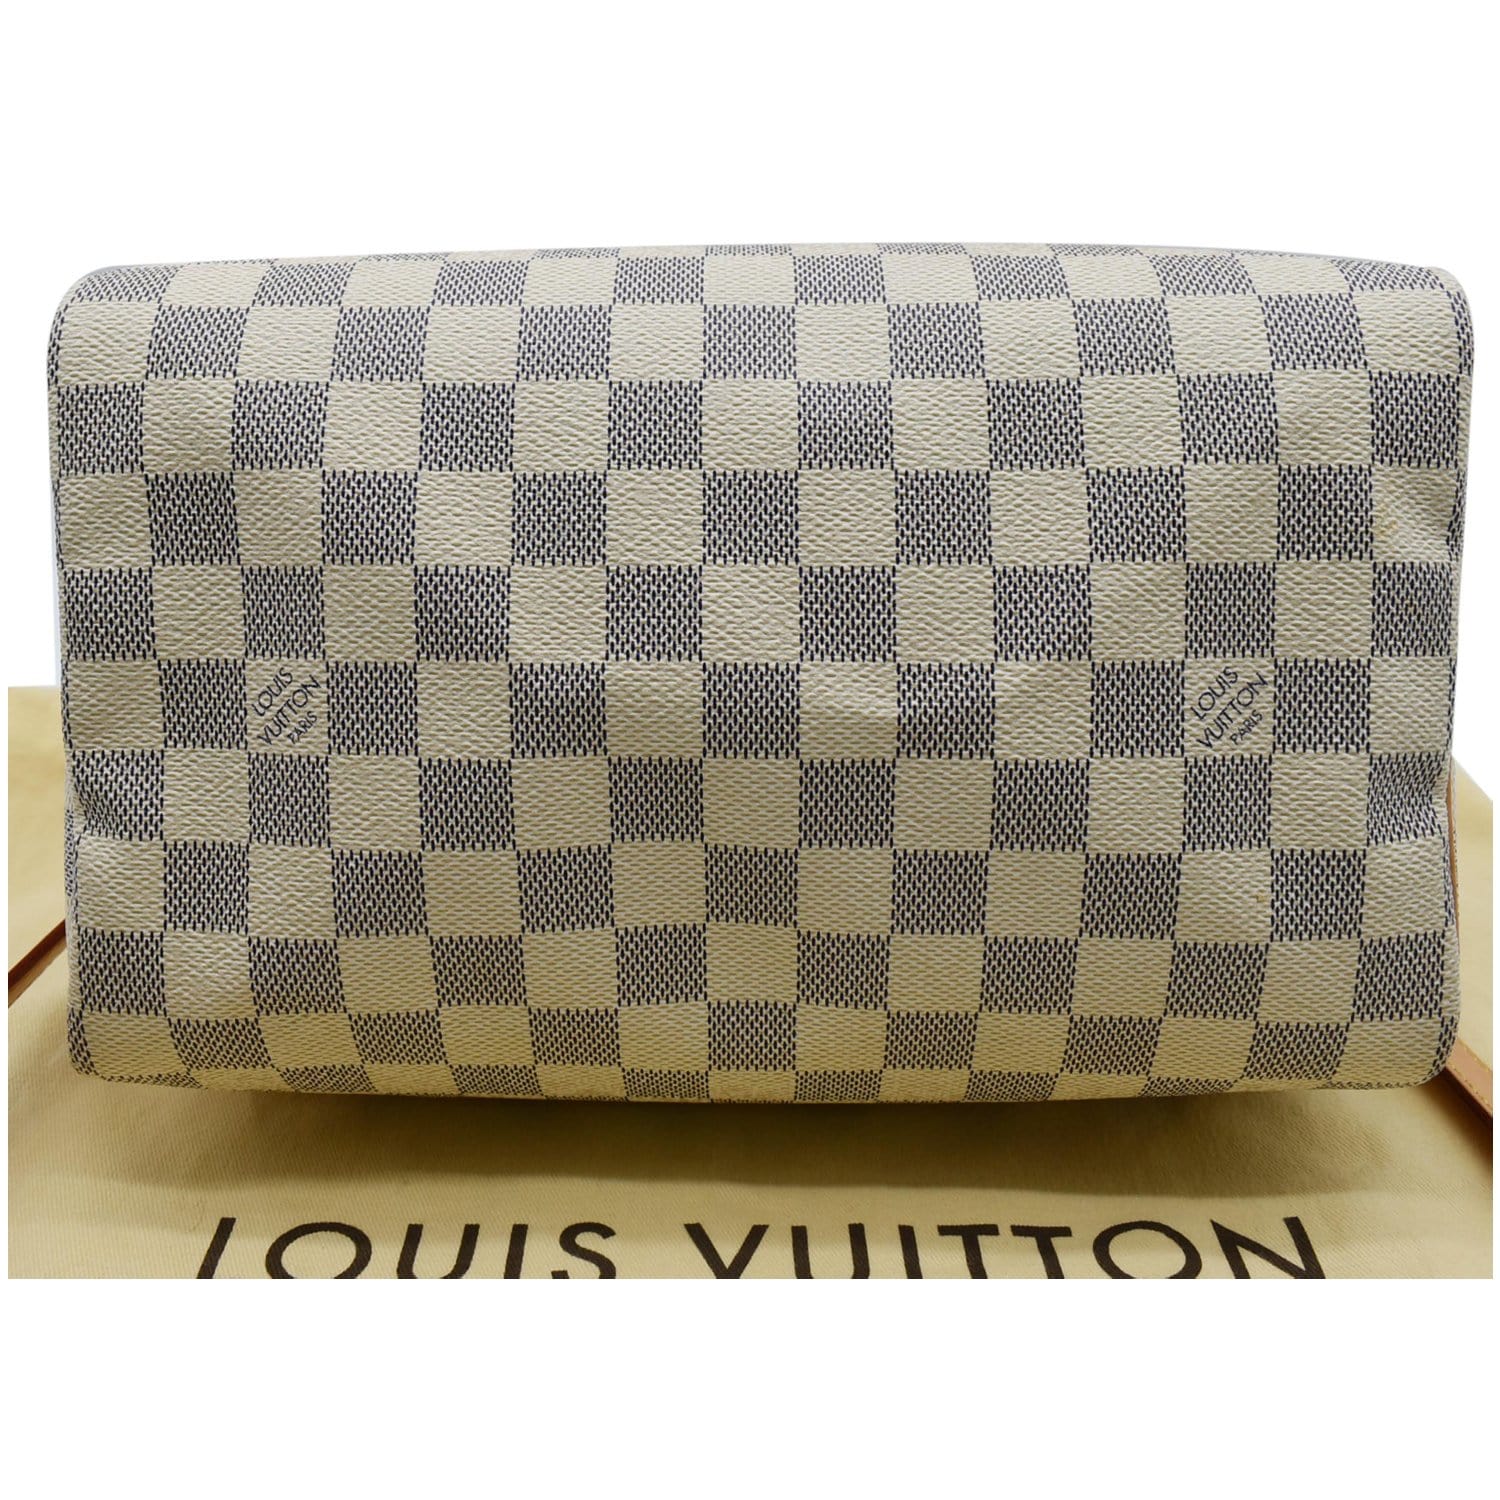 Louis Vuitton Damier Azur Speedy Bandoulière 25 - White Handle